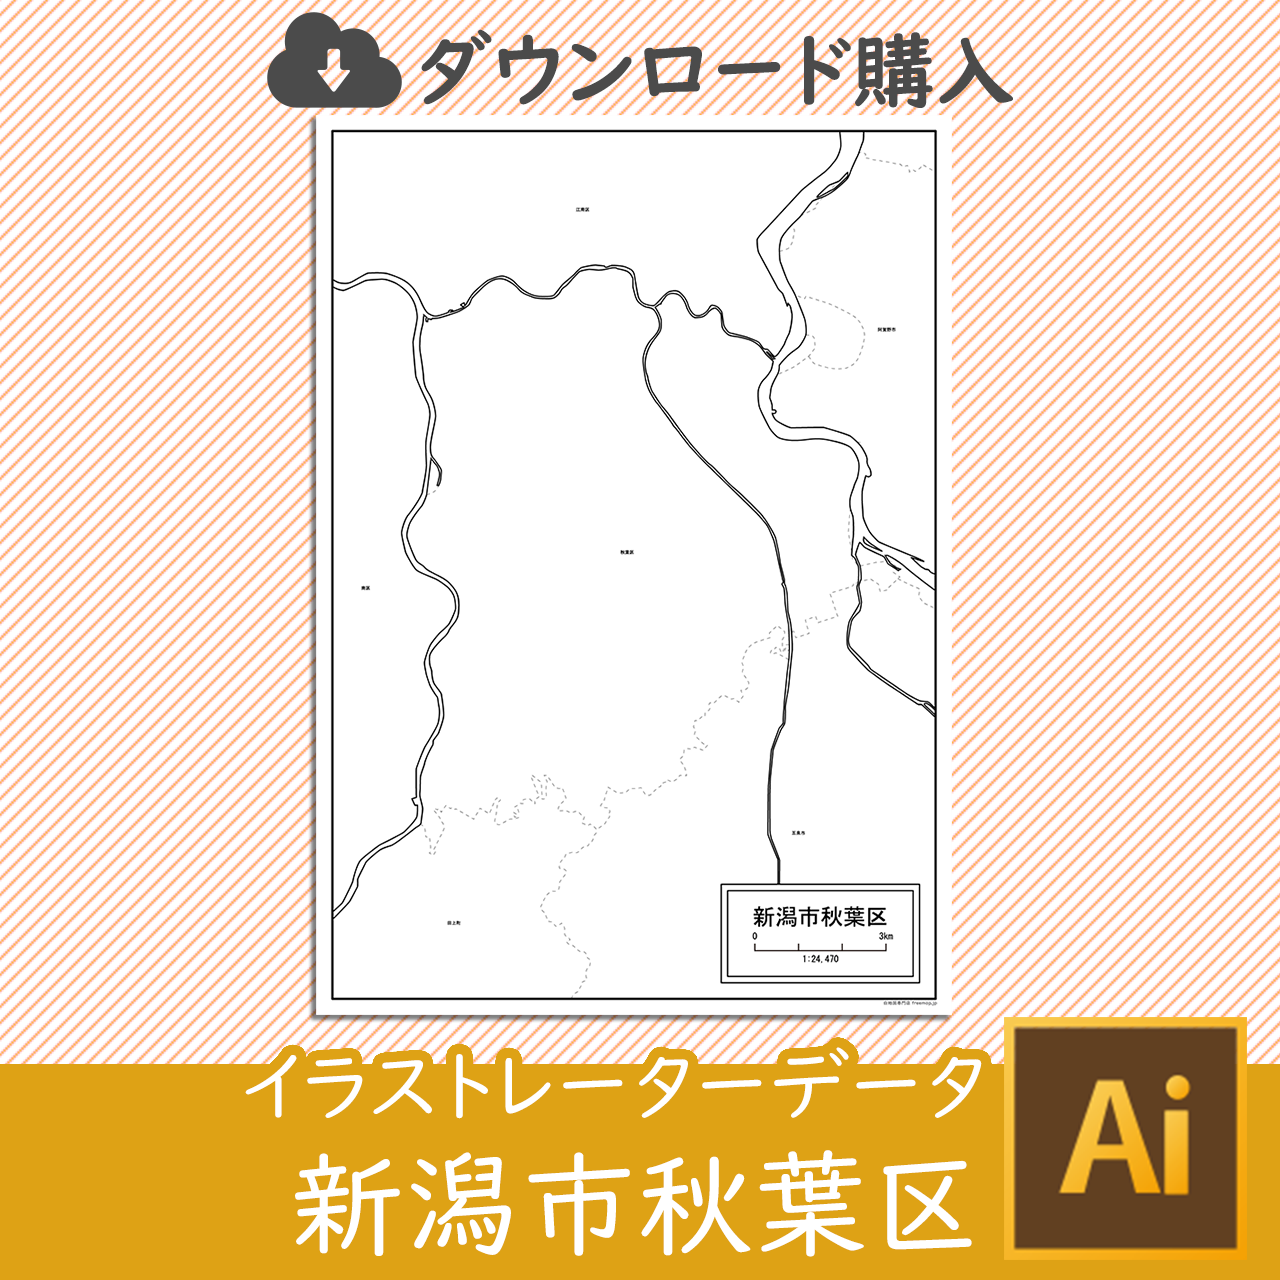 新潟市秋葉区のaiデータのサムネイル画像